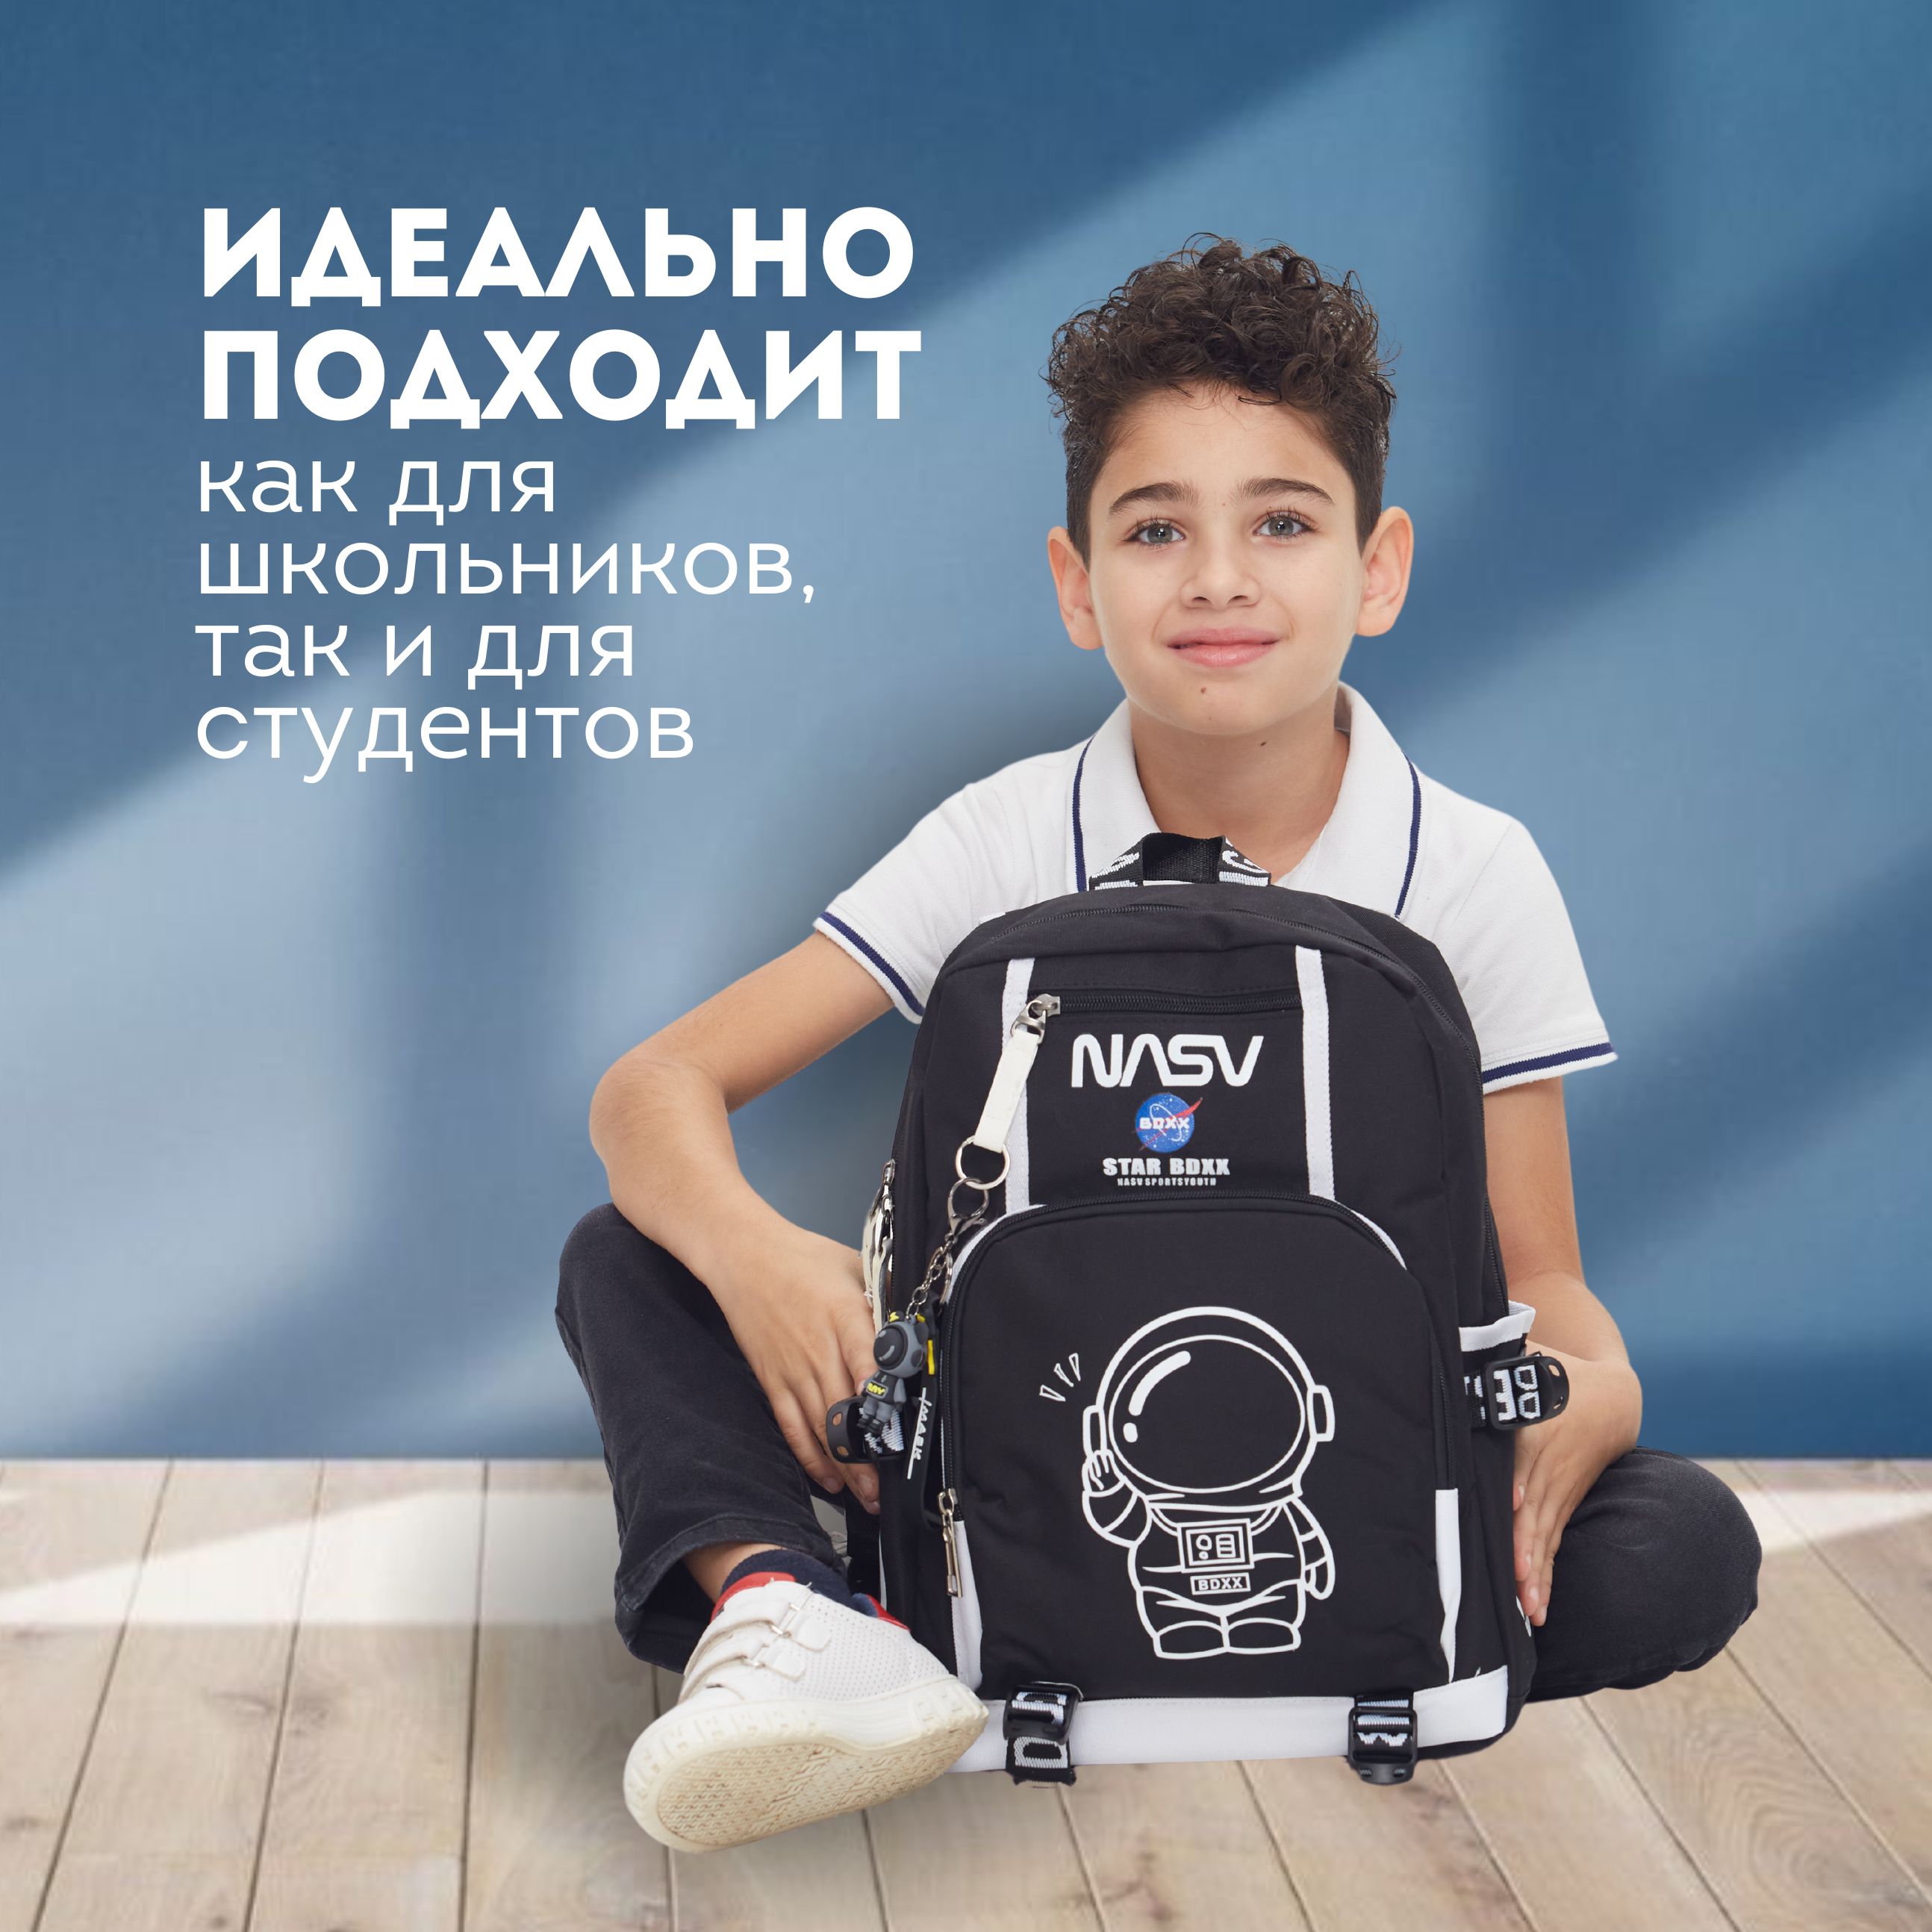 Купить школьный рюкзак для девочки в Минске — цена в интернет-магазине баштрен.рф